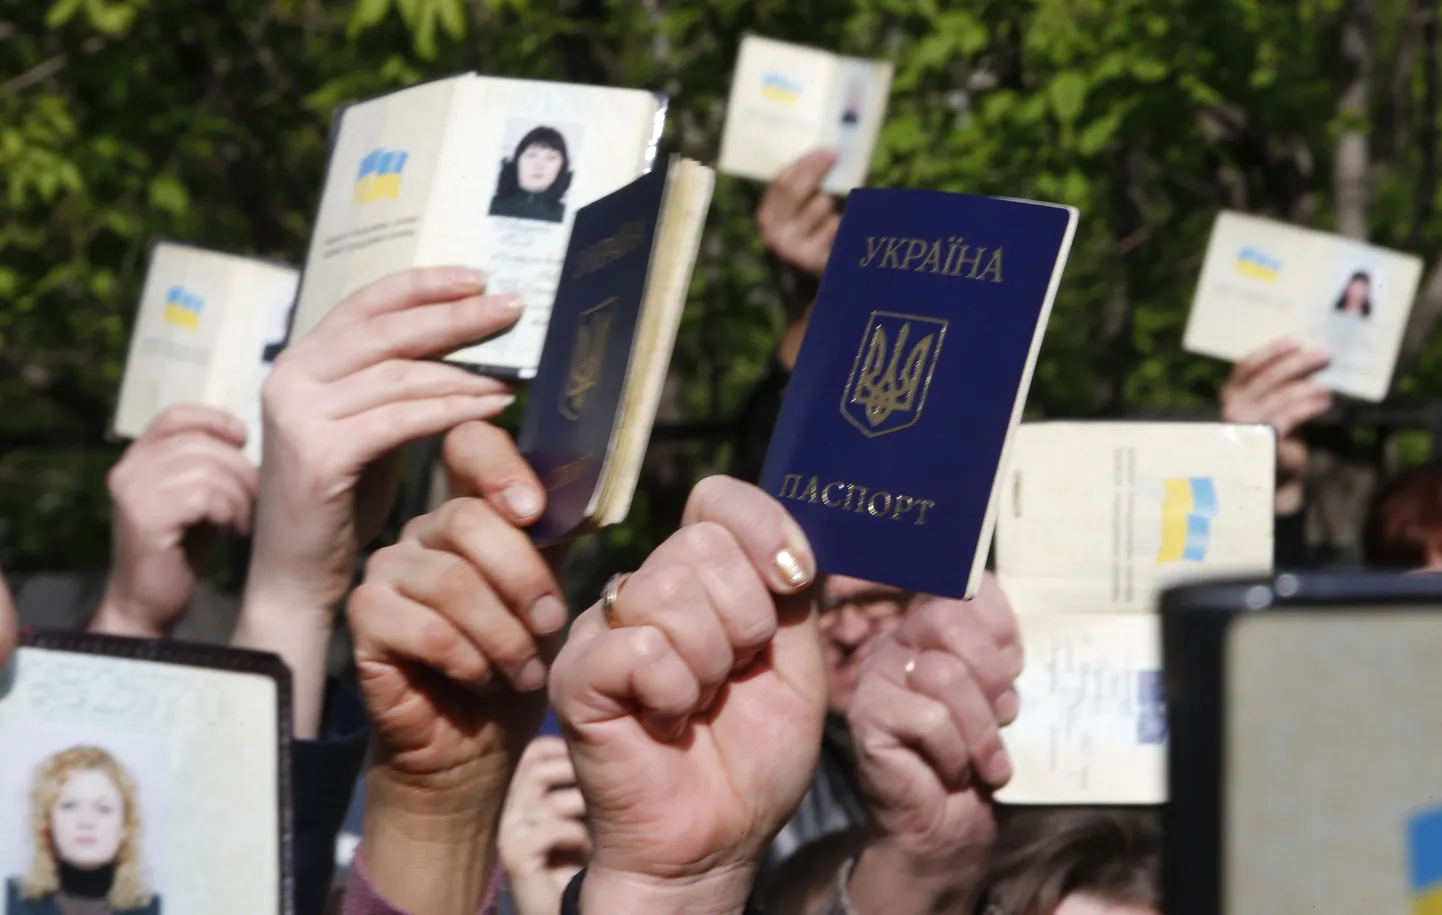 Donetskis vehkisid inimesed Ukraina passidega, kui seisid valimisjaoskonda pääsemiseks järjekorras.